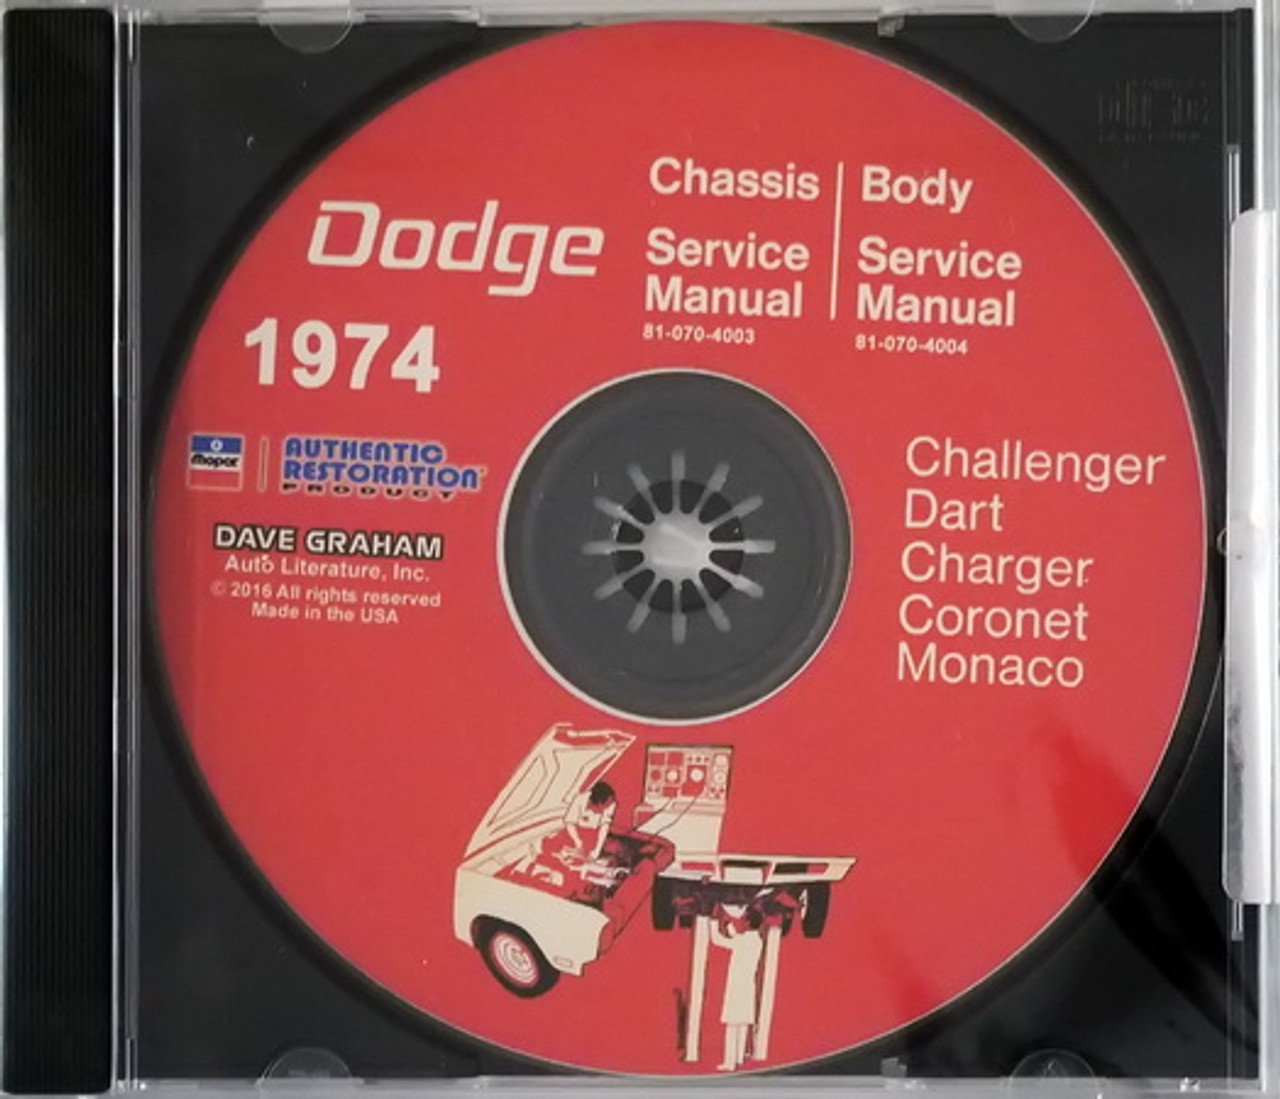 Charger Shop Manual CD 74 DODGE 1974 Challenger Dart 